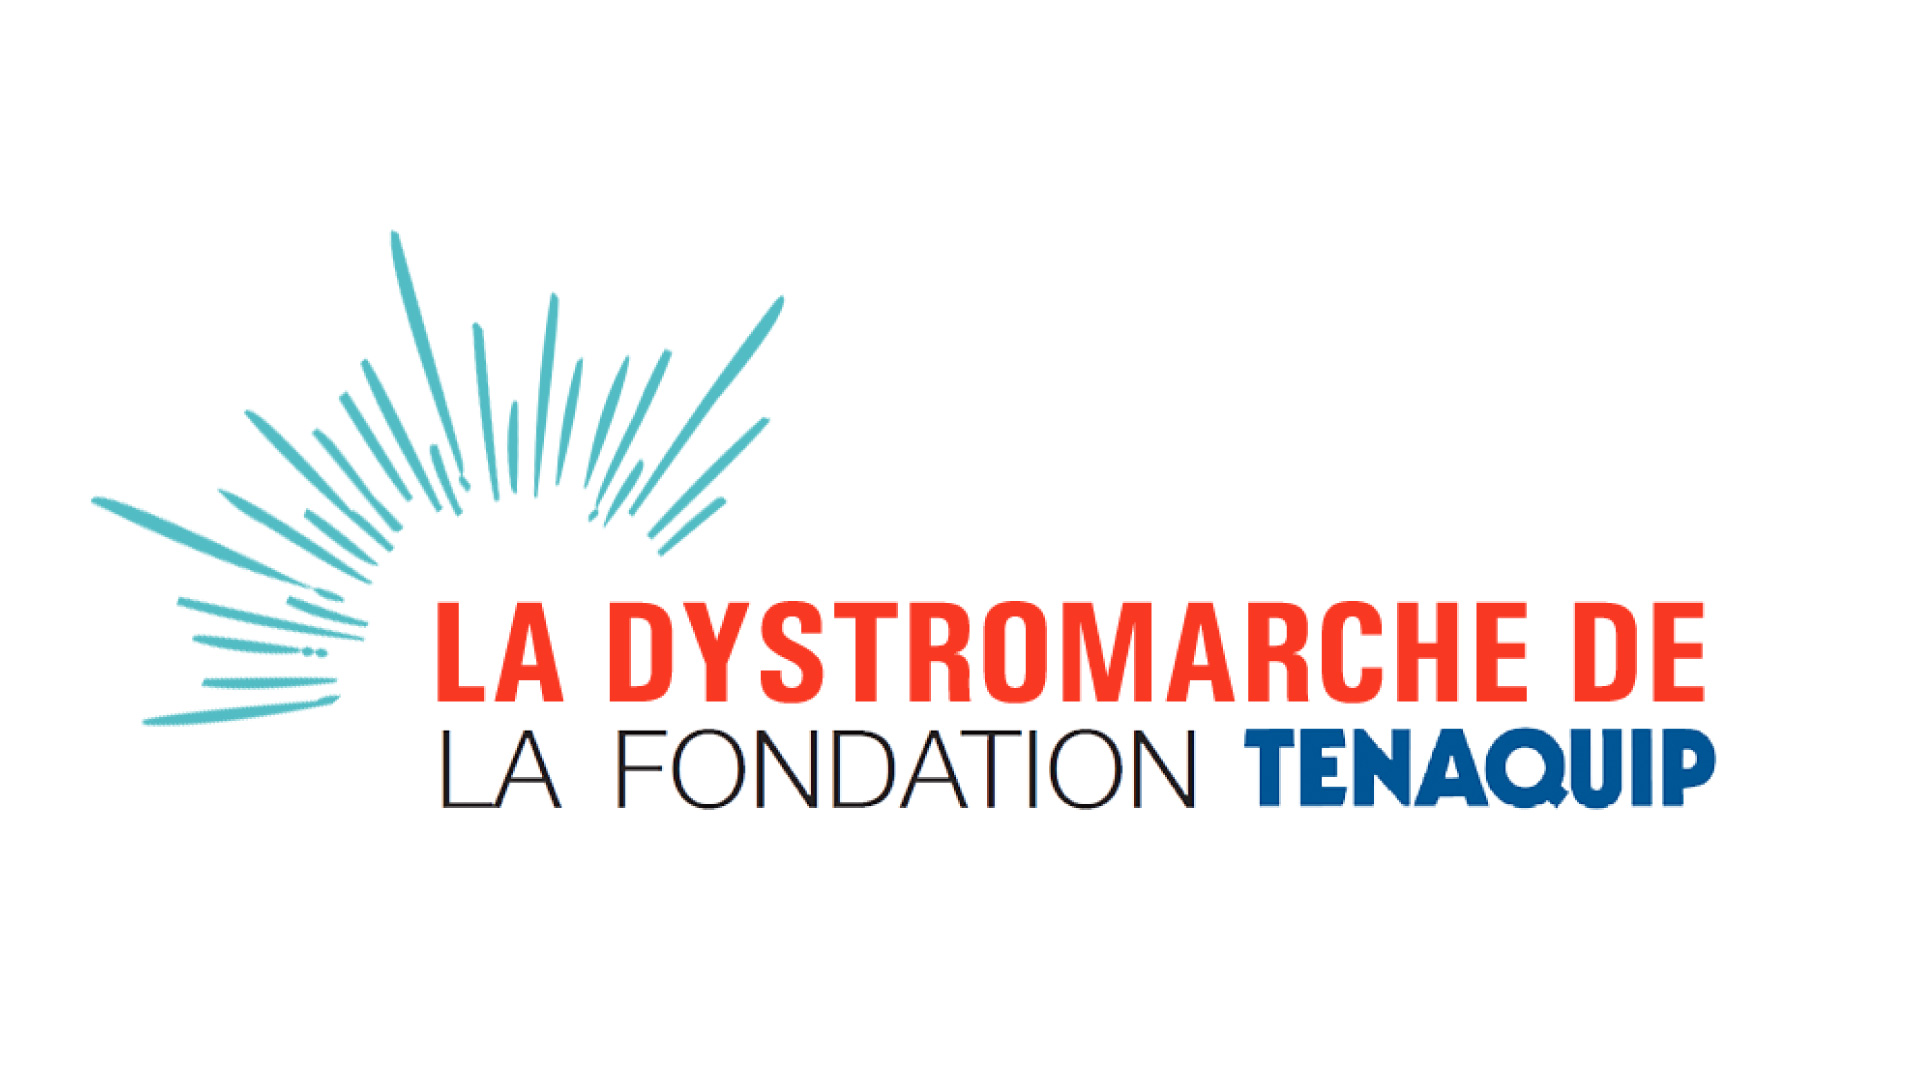 La Dystromarche de la Fondation Tenaquip, des fonds et de l’espoir pour la communauté des maladies neuromusculaires